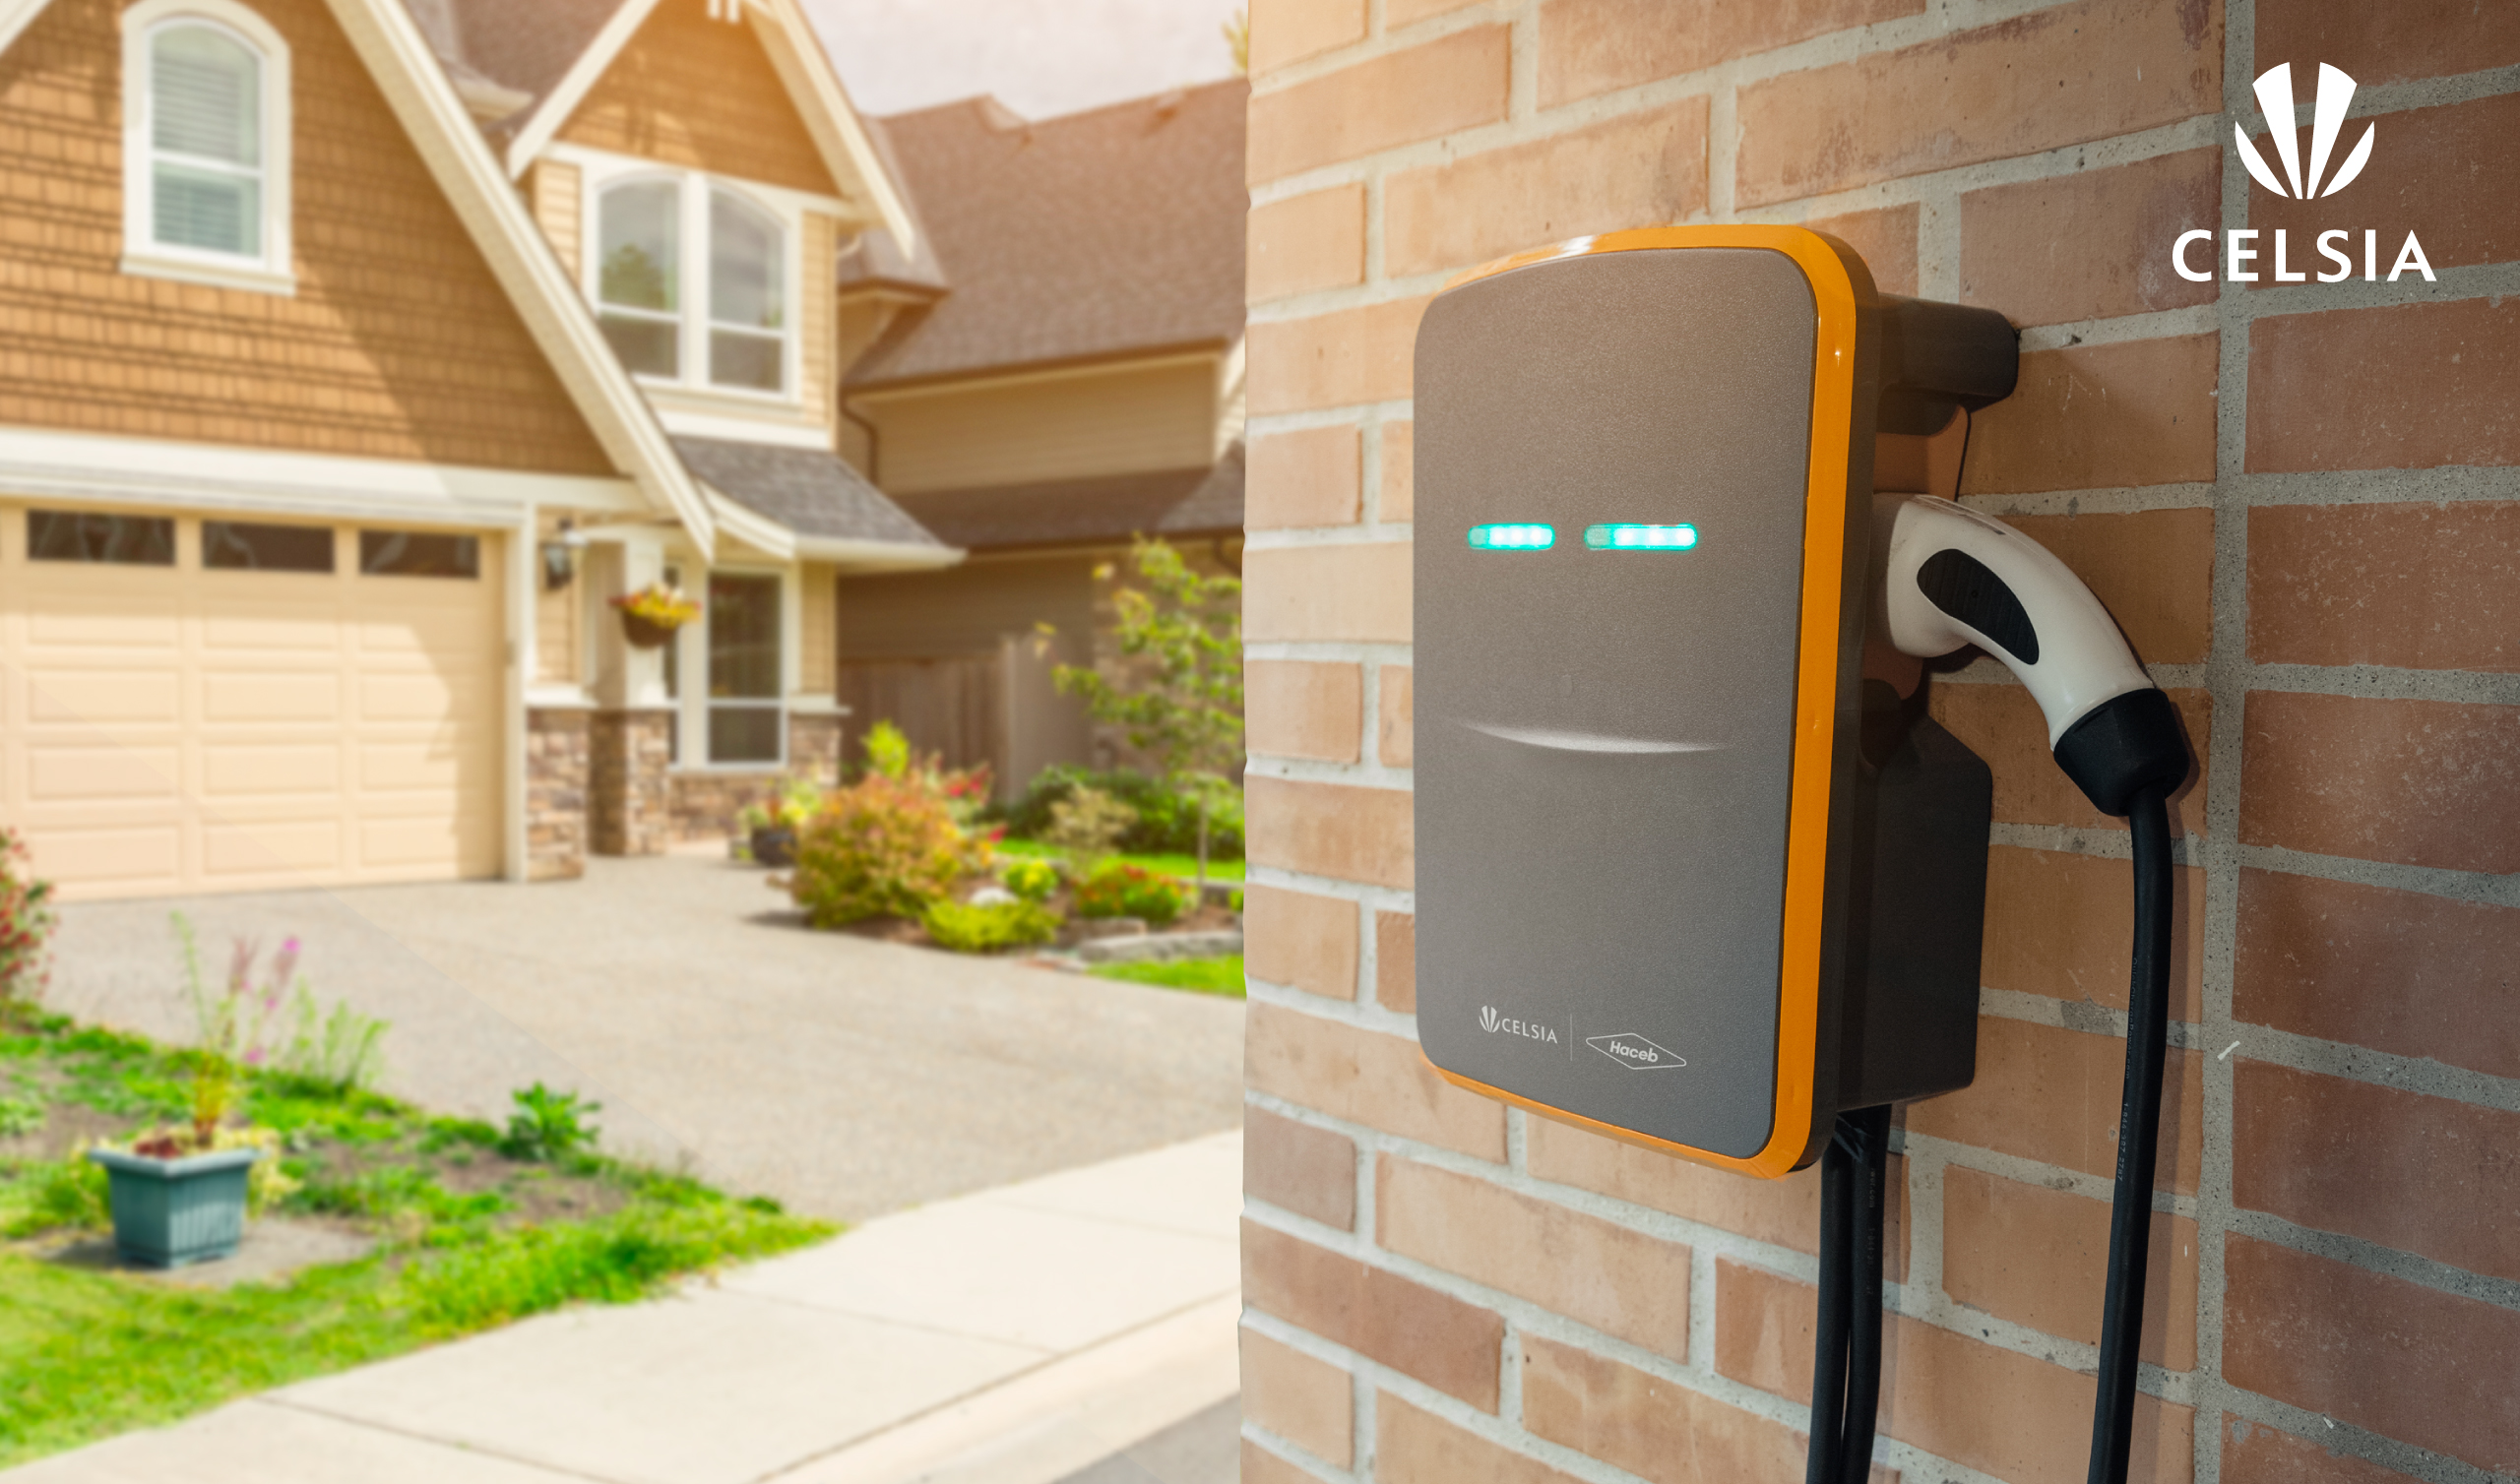 Instala nuestro cargador para carros eléctricos en la comodidad de tu hogar